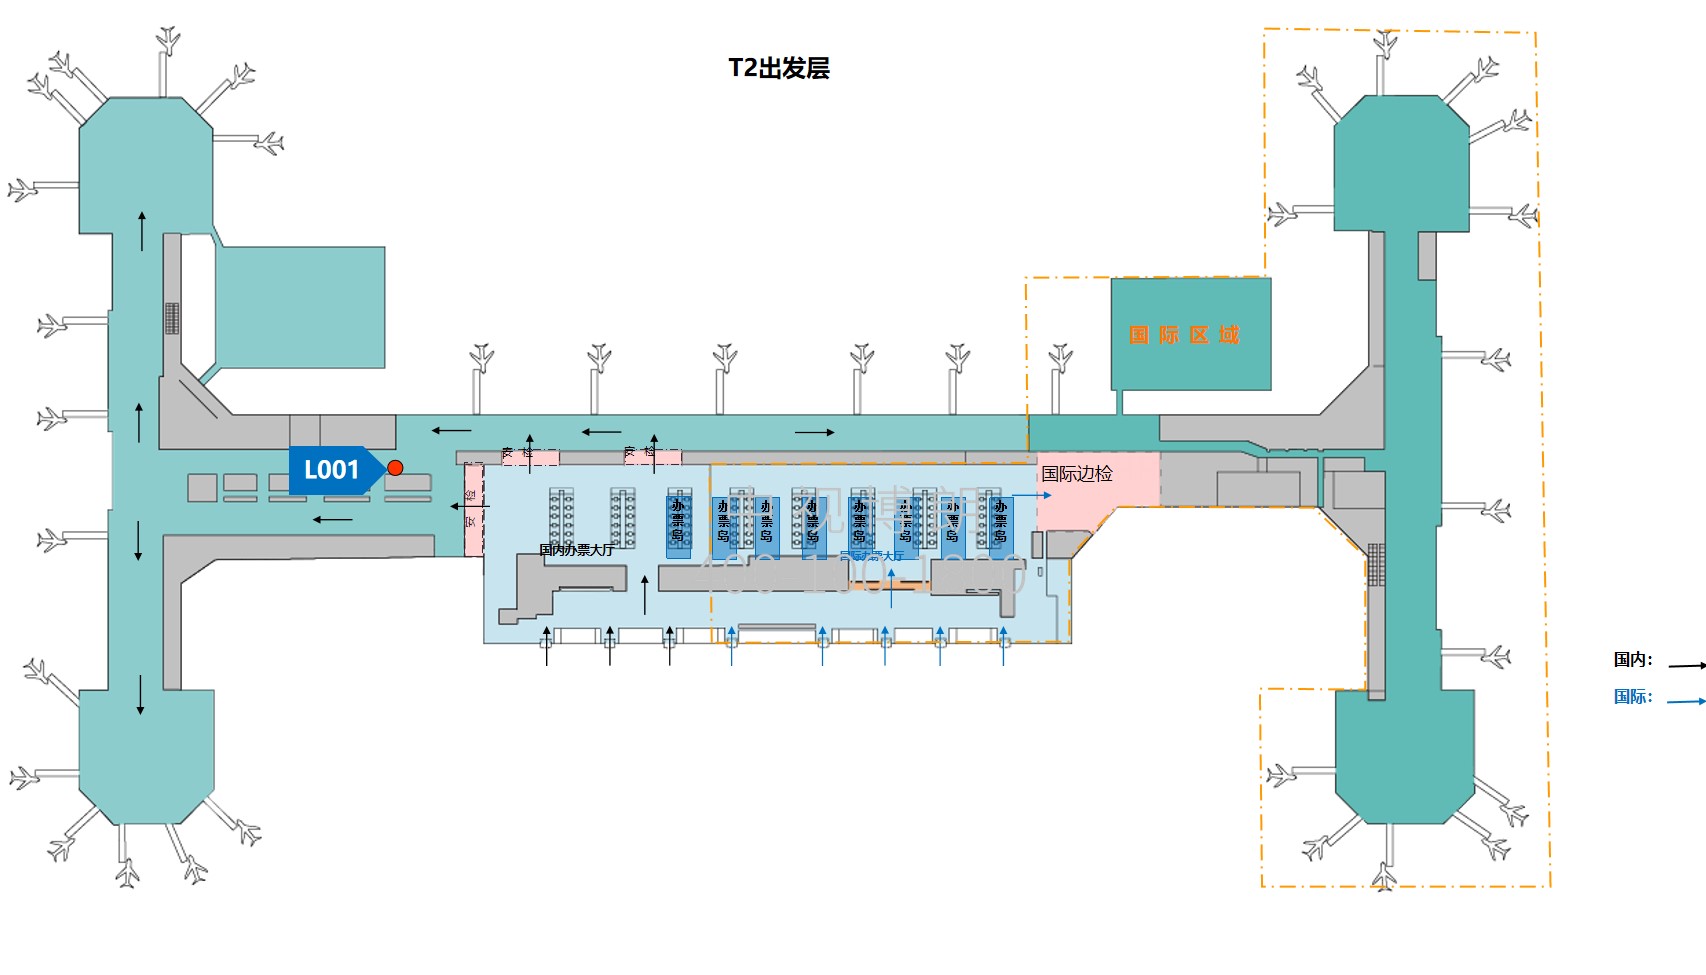 北京首都机场广告-T2 Domestic Departure Corridor Screen L001位置图